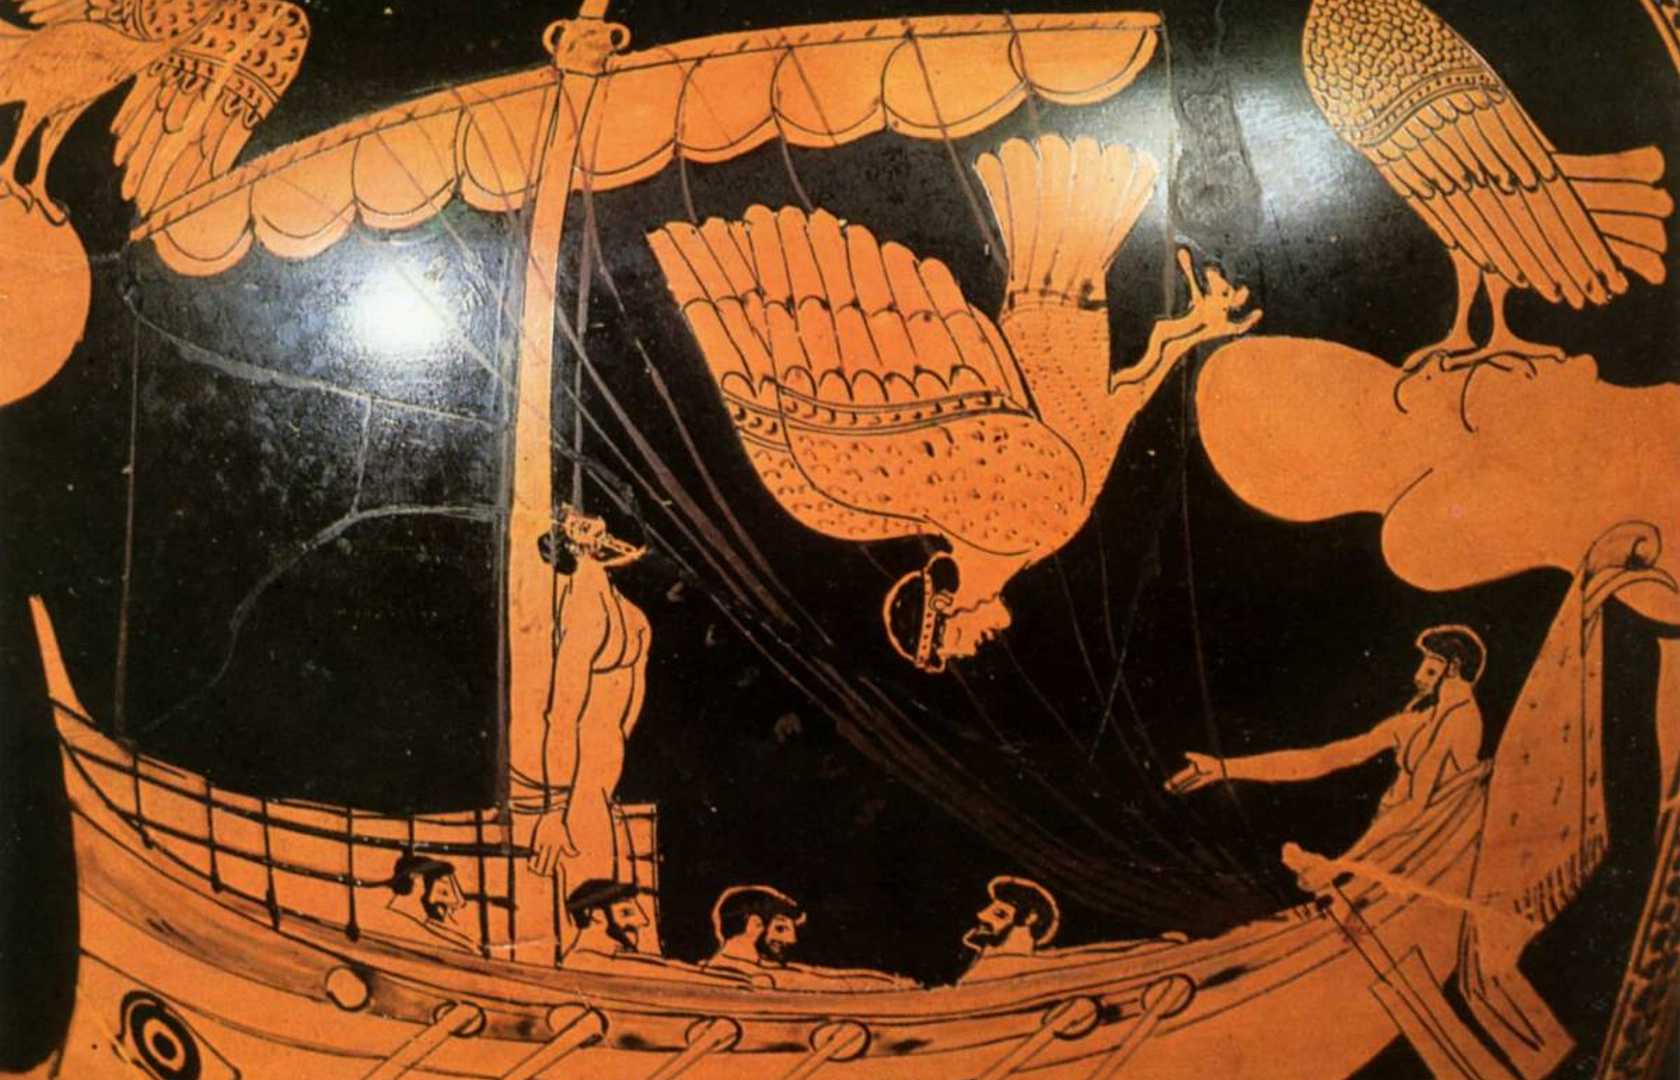 Одиссей и циклоп рисунок